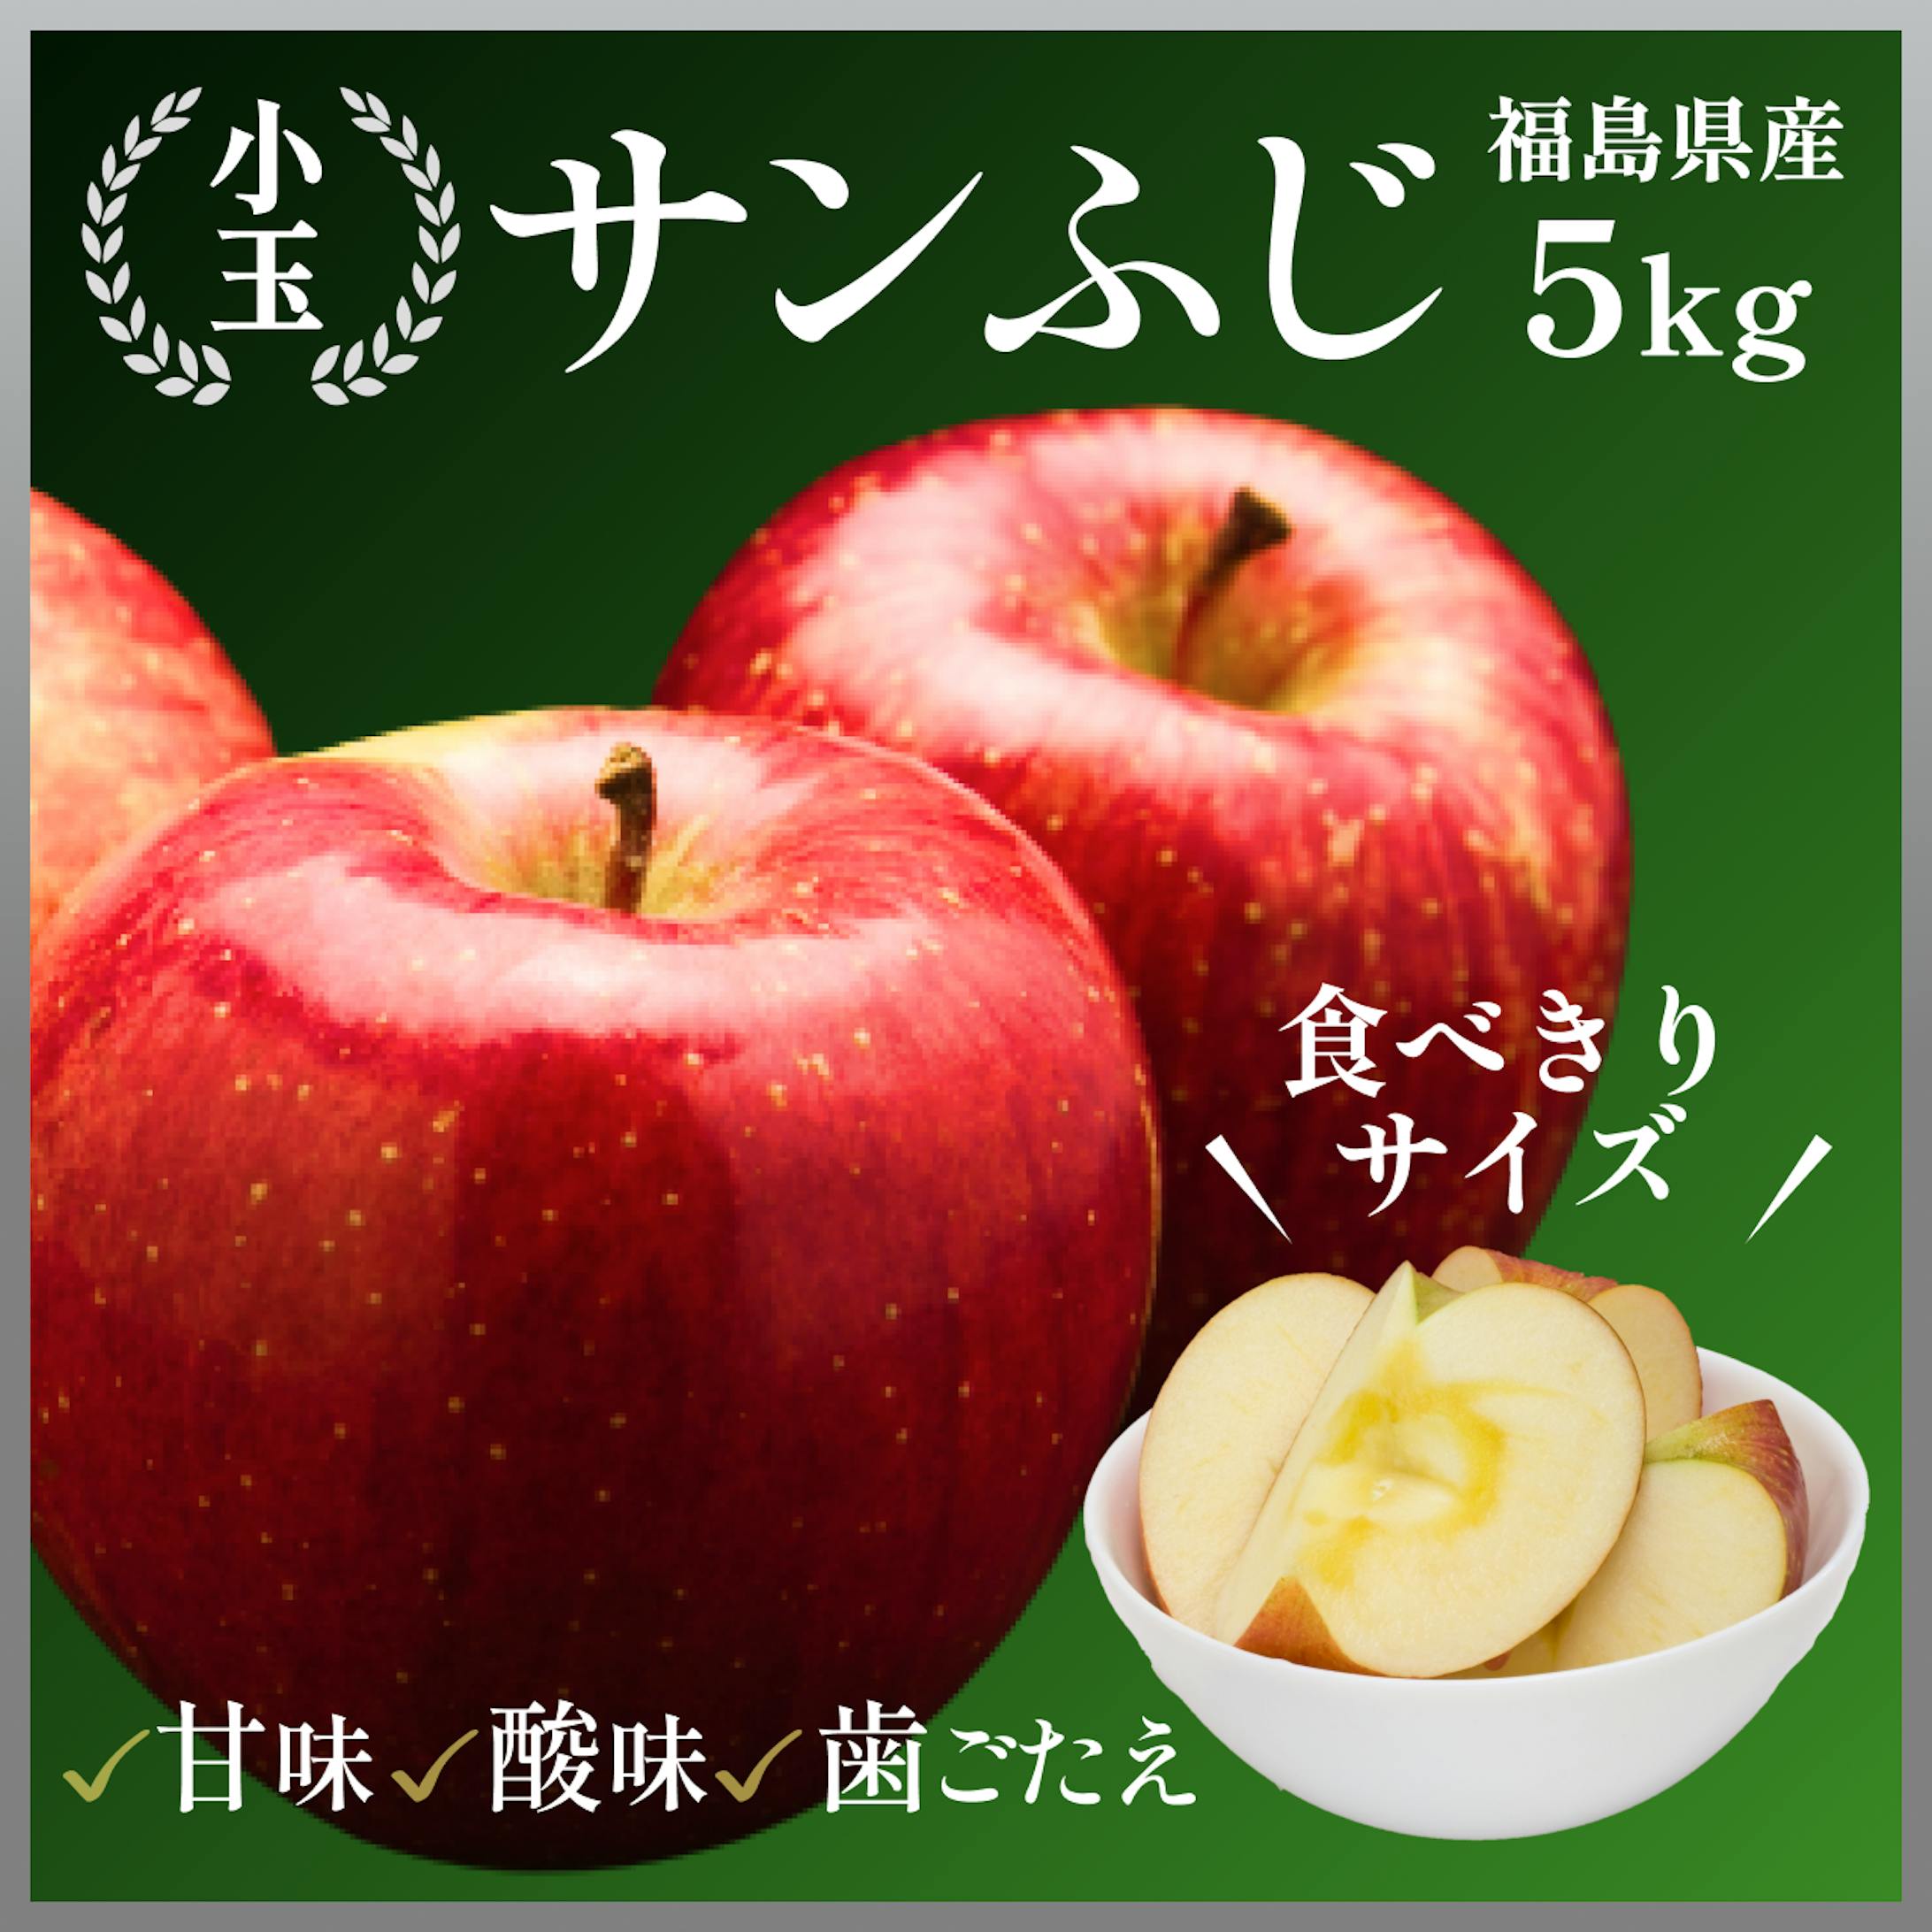 【実績】果樹園様のECサイト商品バナー-2